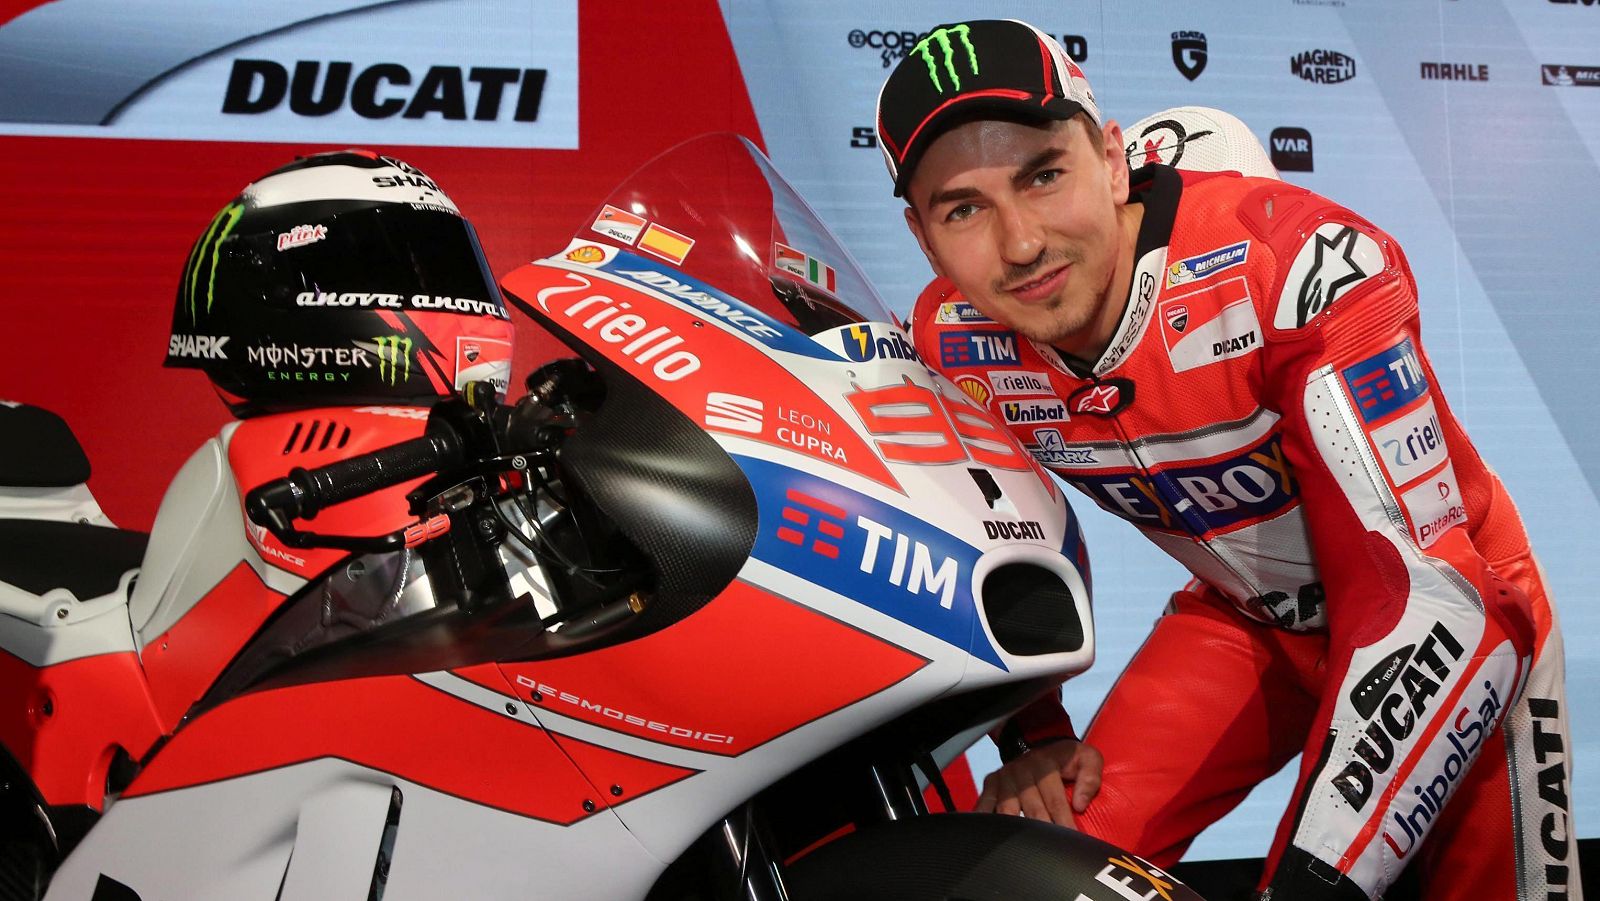 Lorenzo desembarca en Ducati con el deseo de ser campeón